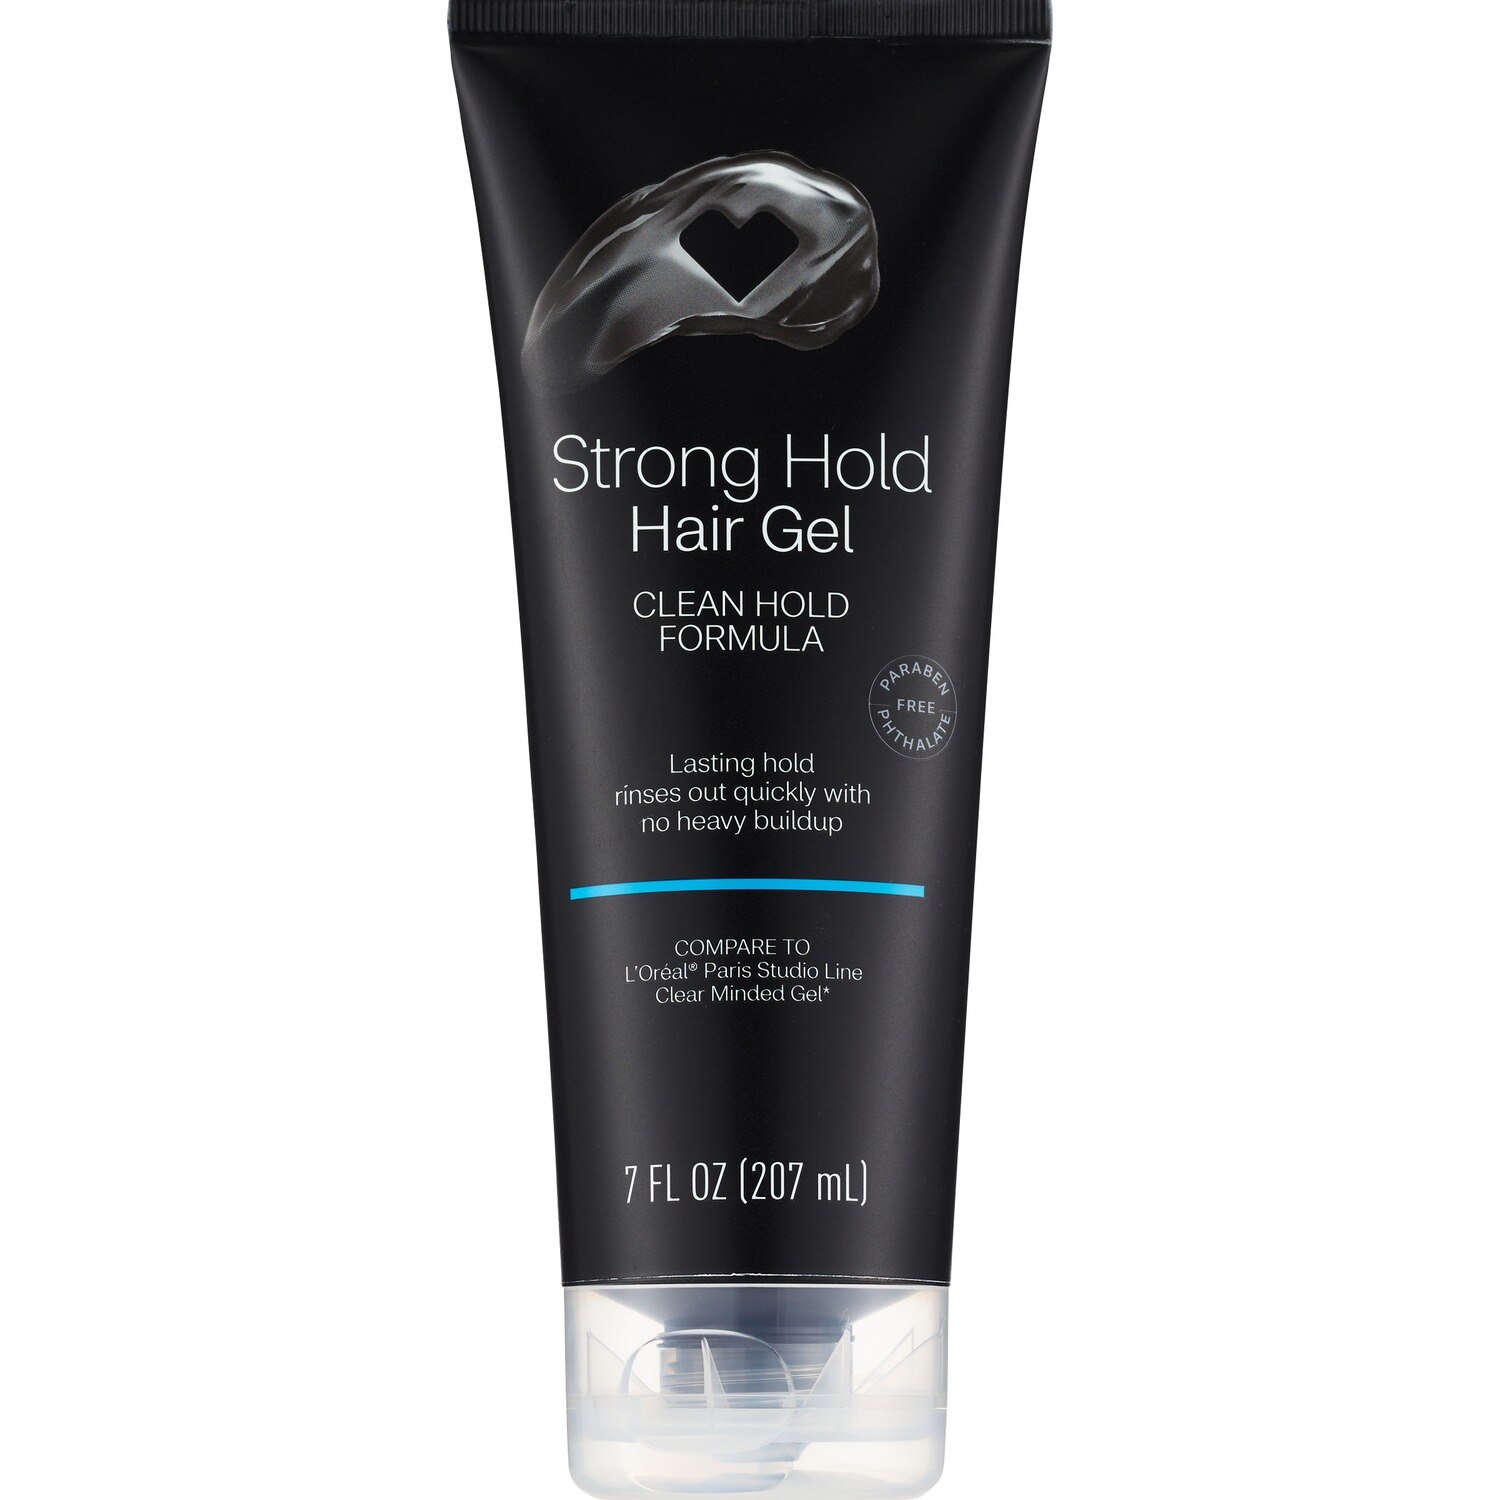 Beauty 360 - Gel para el cabello de fijación fuerte, fórmula Clean Hold, 7 oz